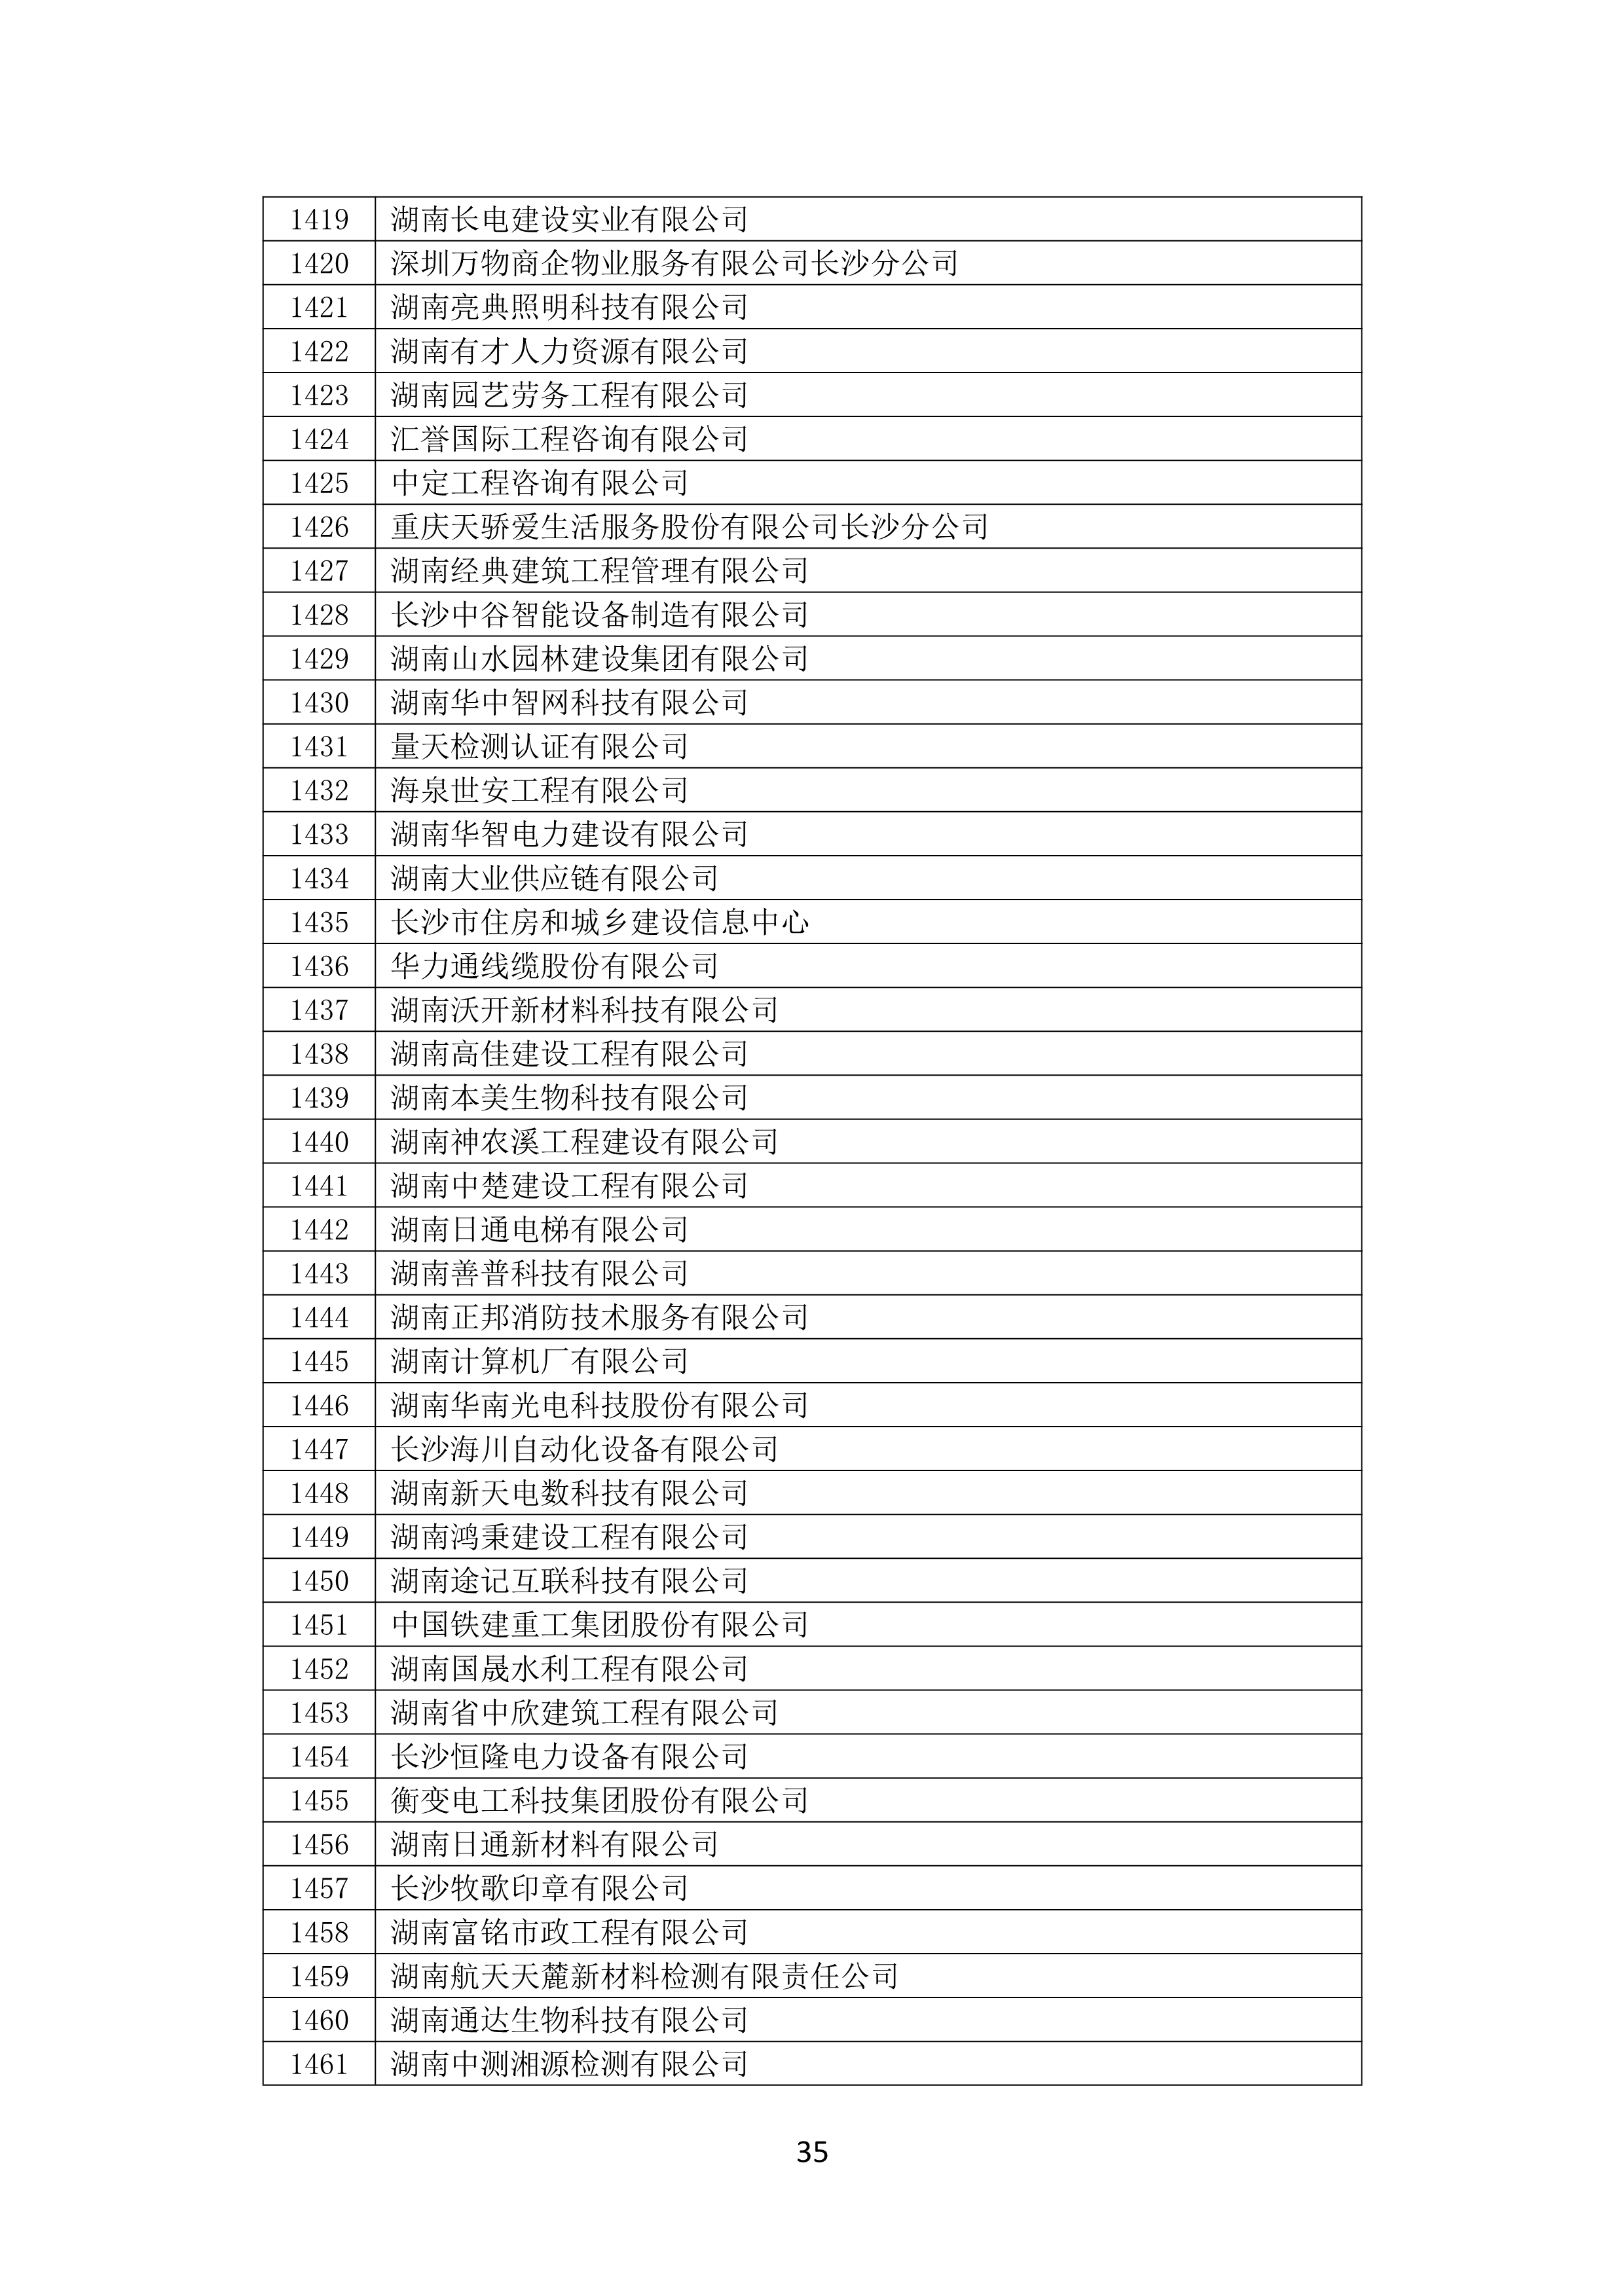 2021 年(nián)度湖南省守合同重信用企業名單_36.png